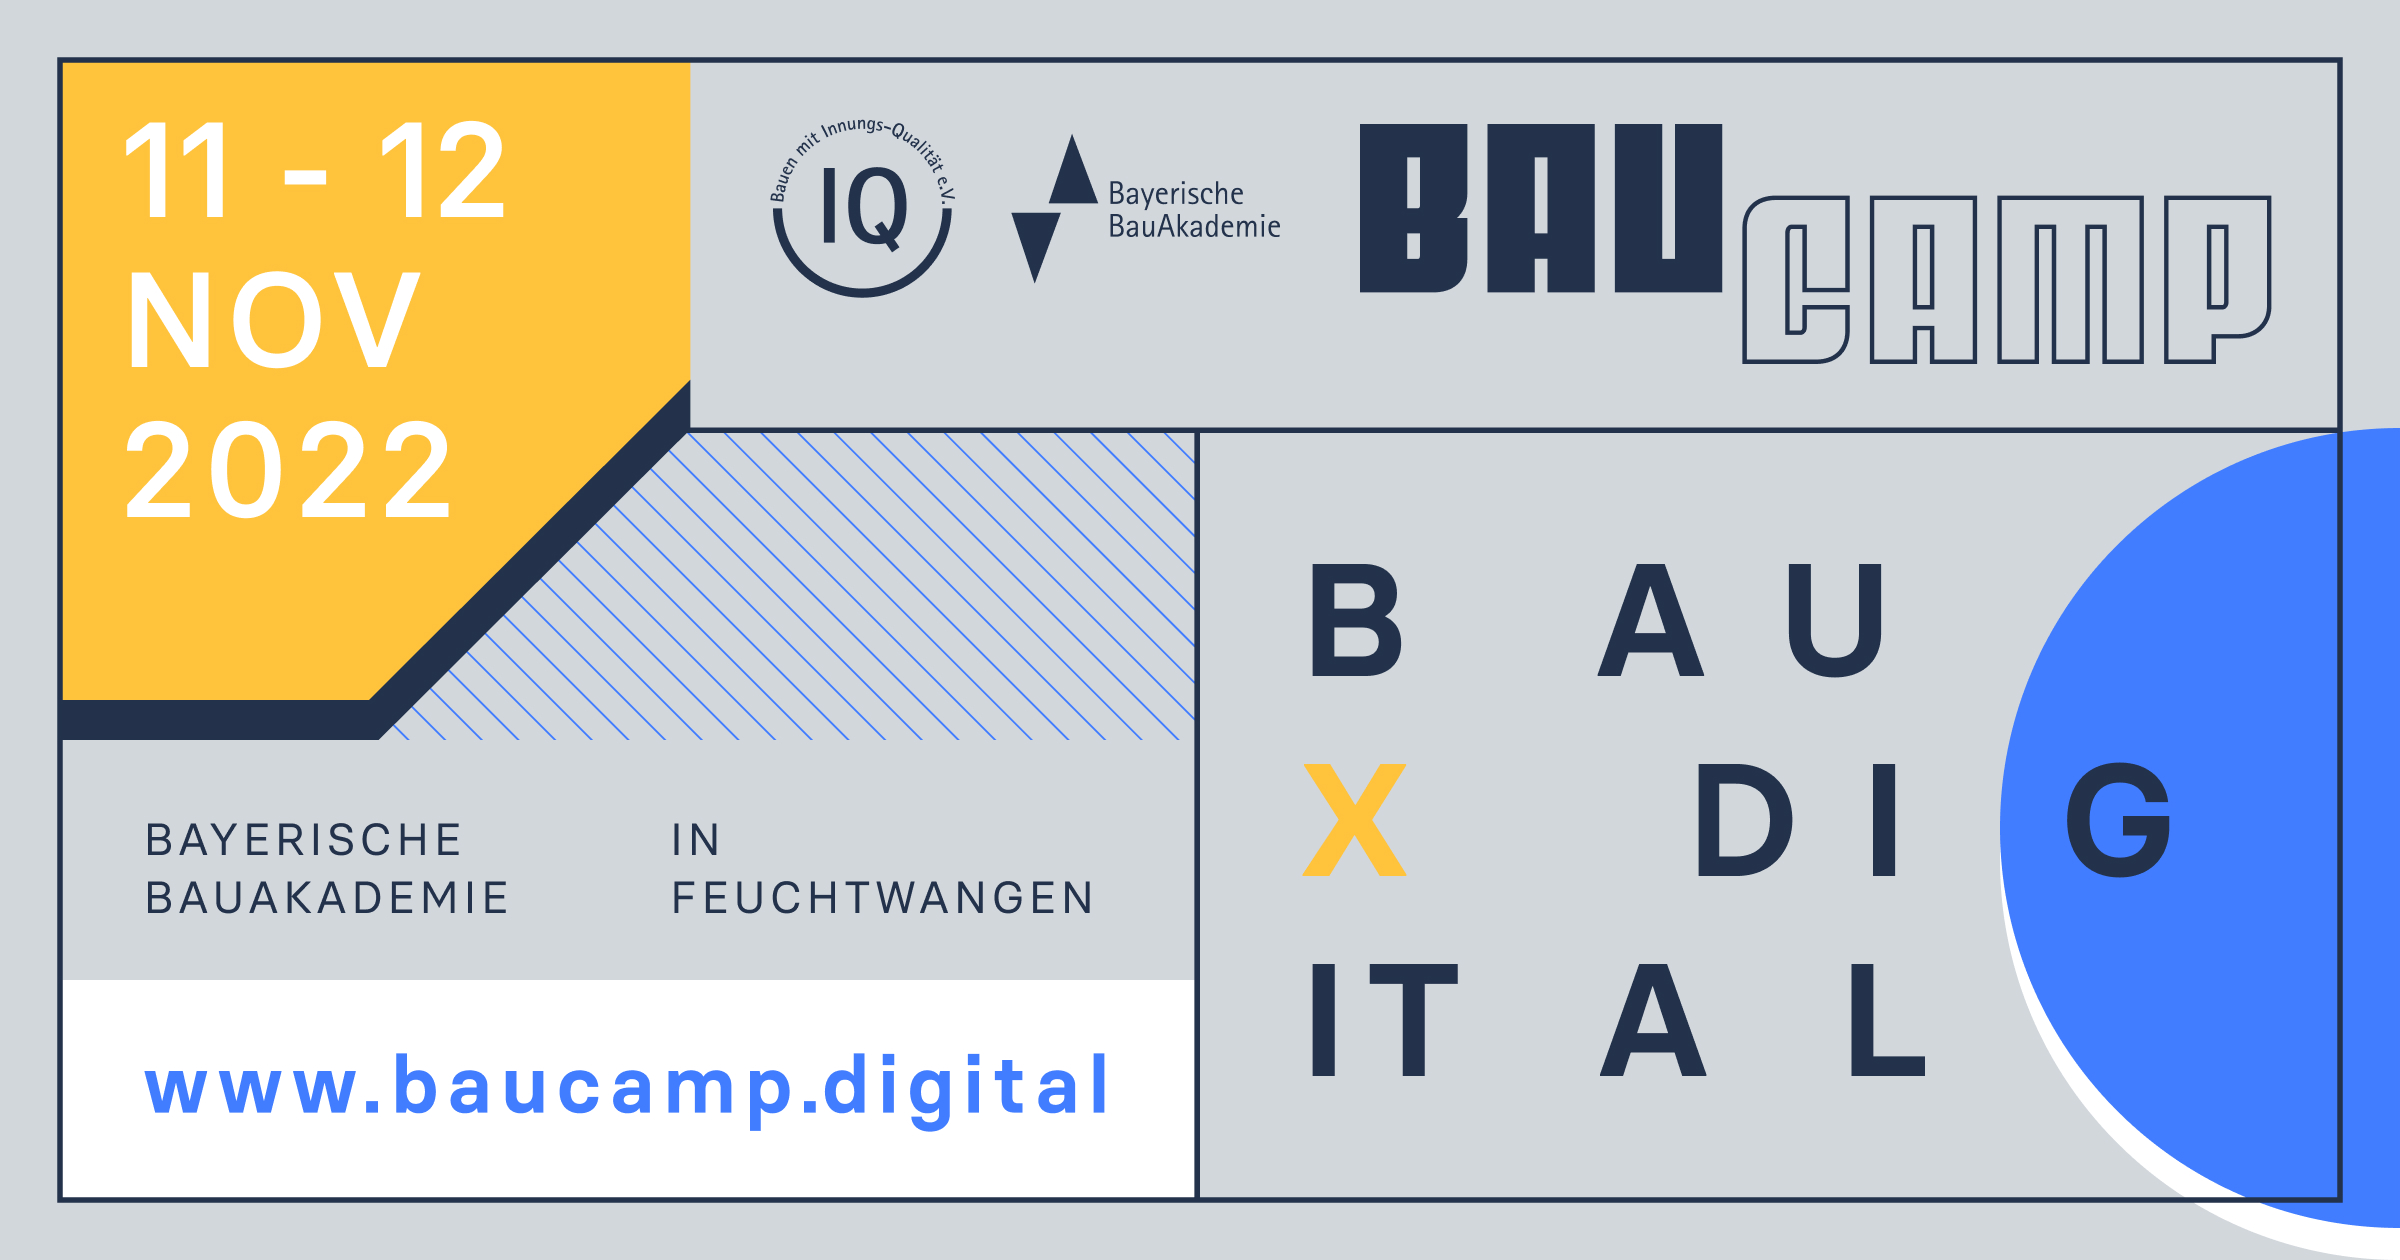 (c) Baucamp.digital